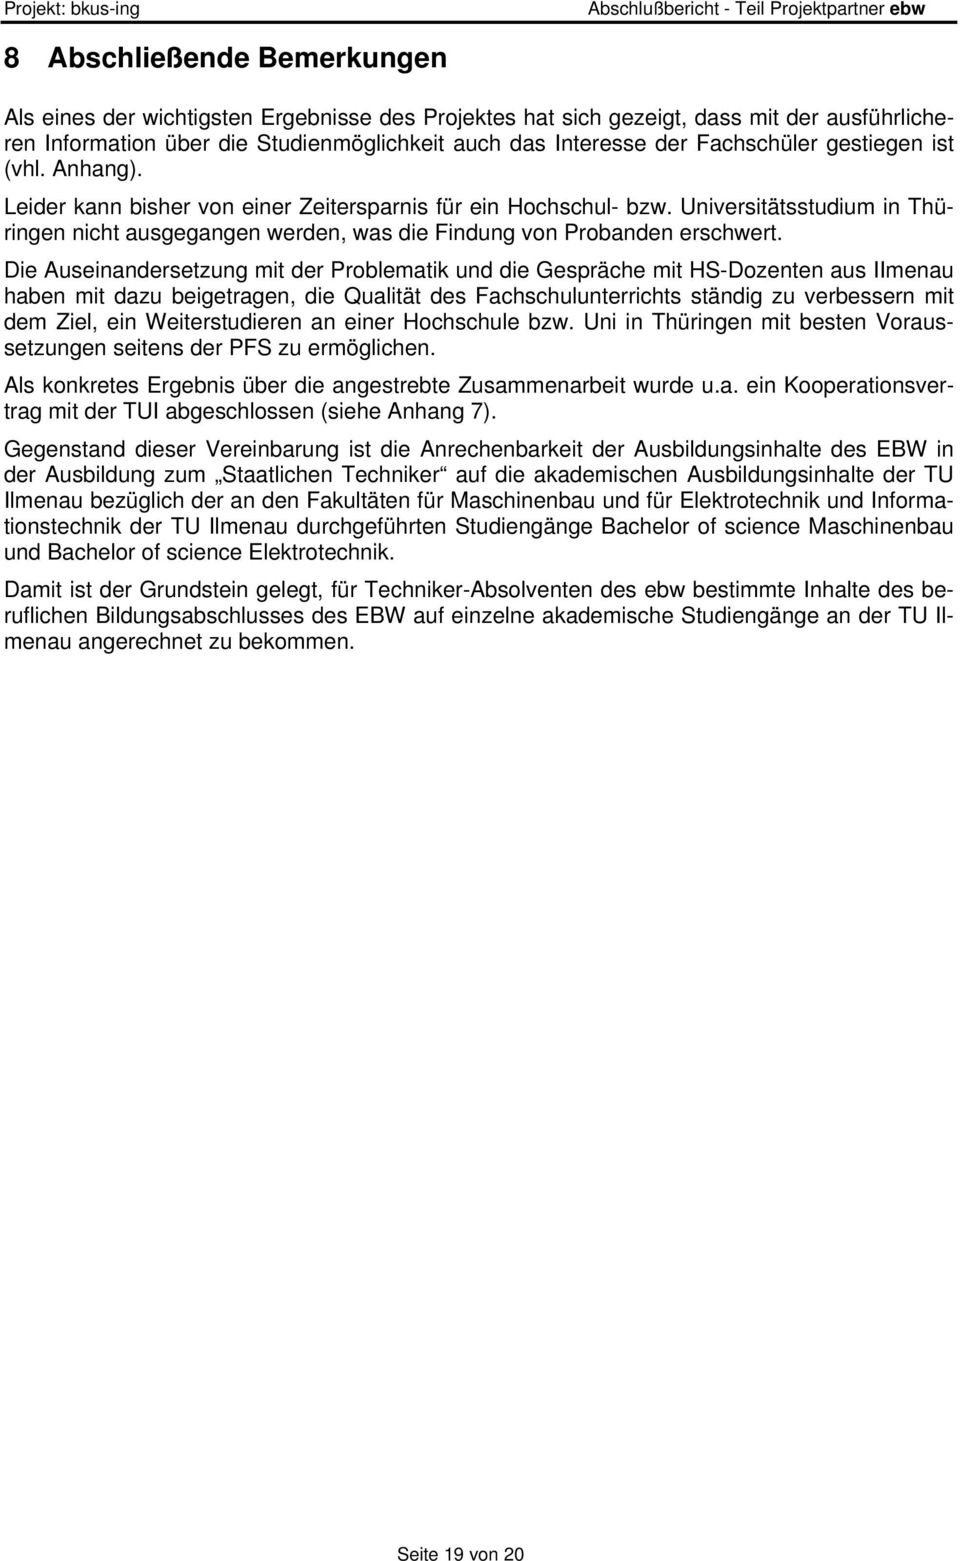 Universitätsstudium in Thüringen nicht ausgegangen werden, was die Findung von Probanden erschwert.